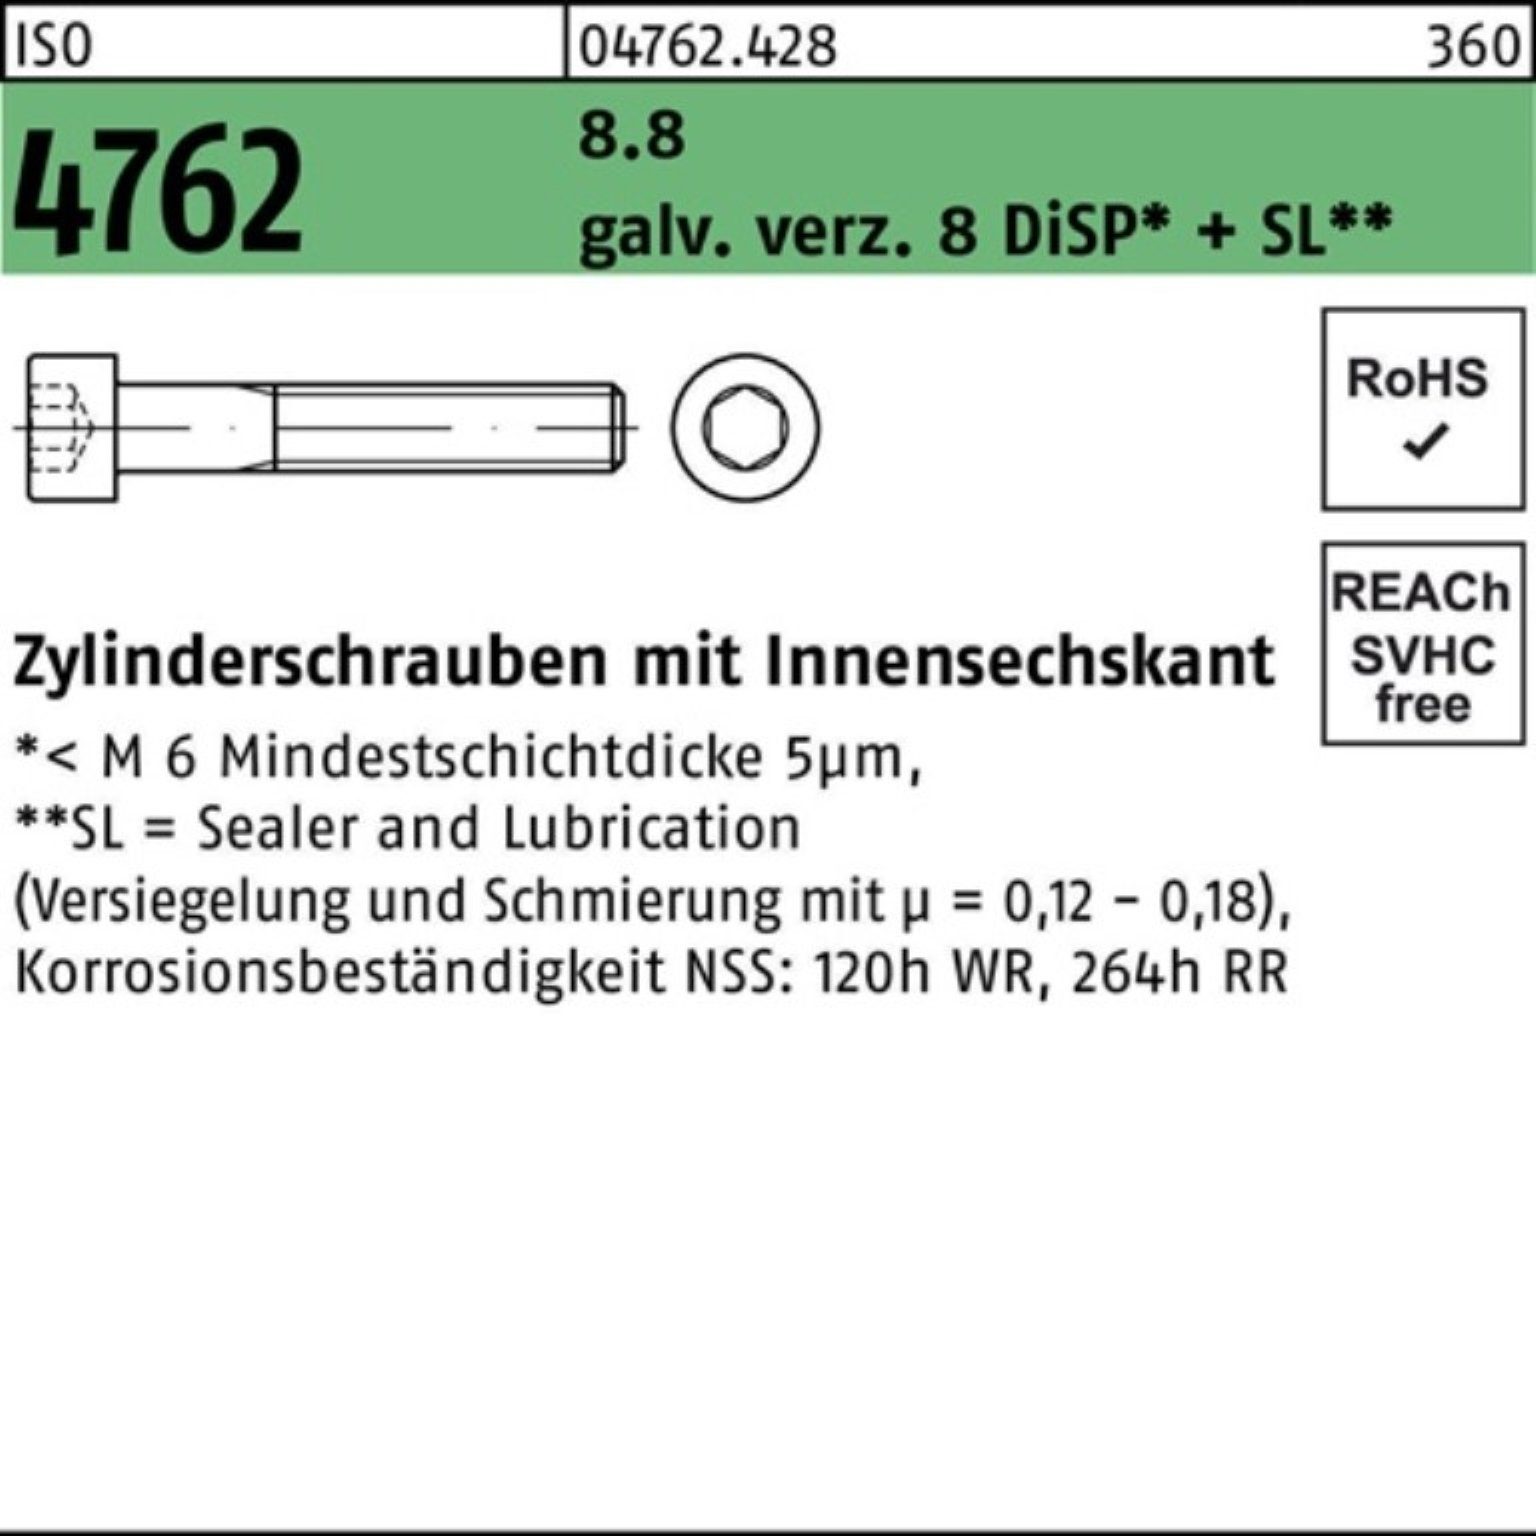 Reyher Zylinderschraube 500er Pack Zylinderschraube 8 Innen-6kt M3x16 8.8 galv.verz. 4762 ISO